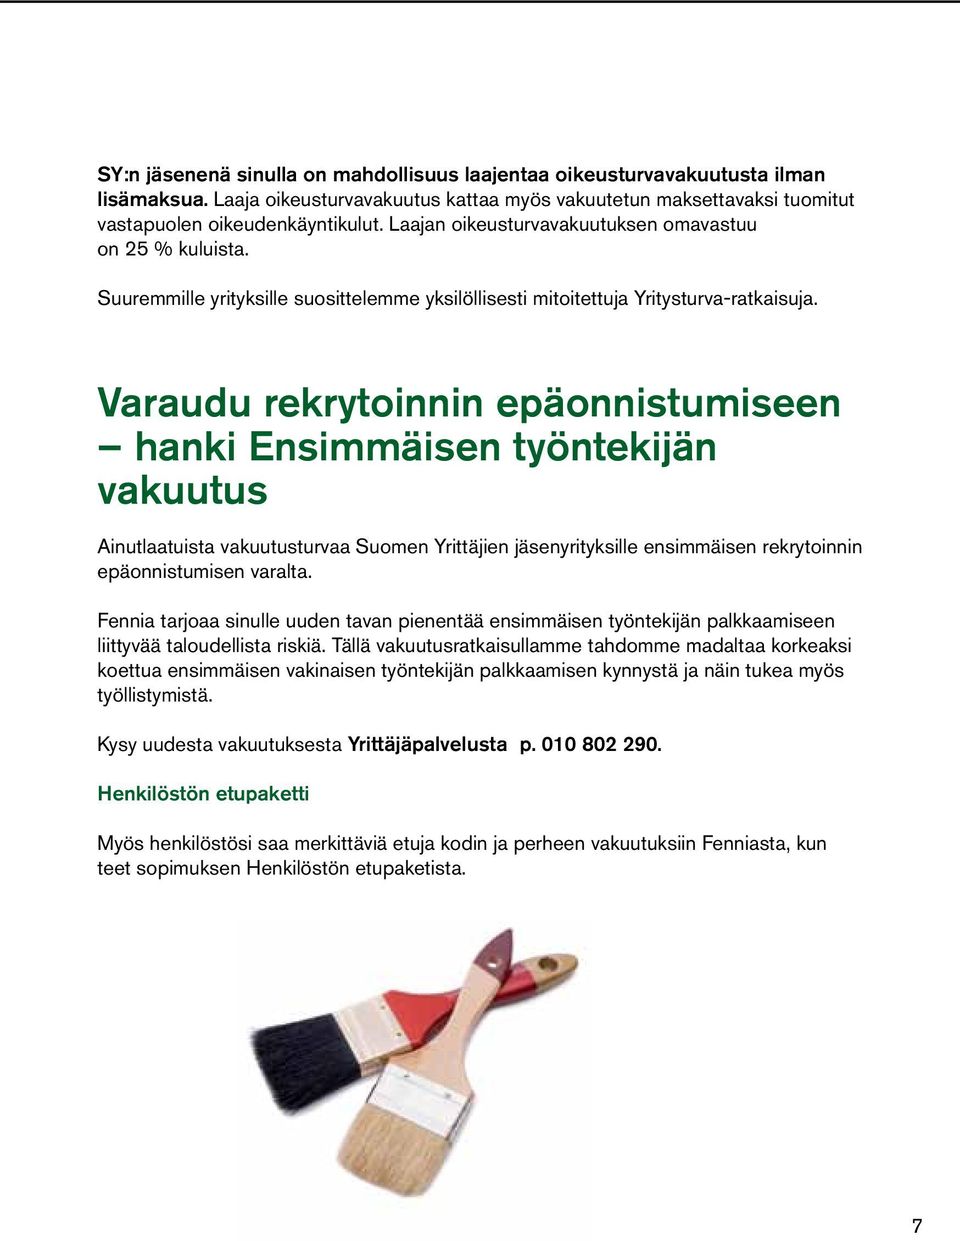 Varaudu rekrytoinnin epäonnistumiseen hanki Ensimmäisen työntekijän vakuutus Ainutlaatuista vakuutusturvaa Suomen Yrittäjien jäsenyrityksille ensimmäisen rekrytoinnin epäonnistumisen varalta.